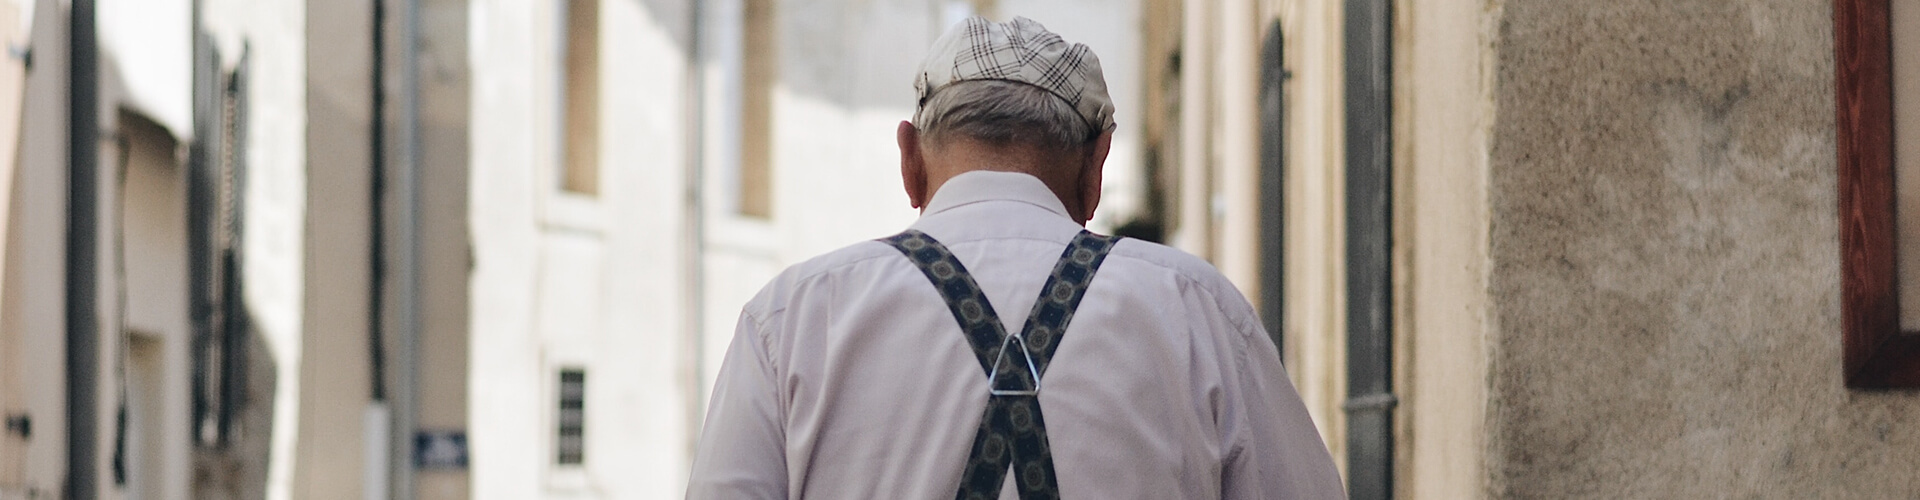 elderly man walking through town